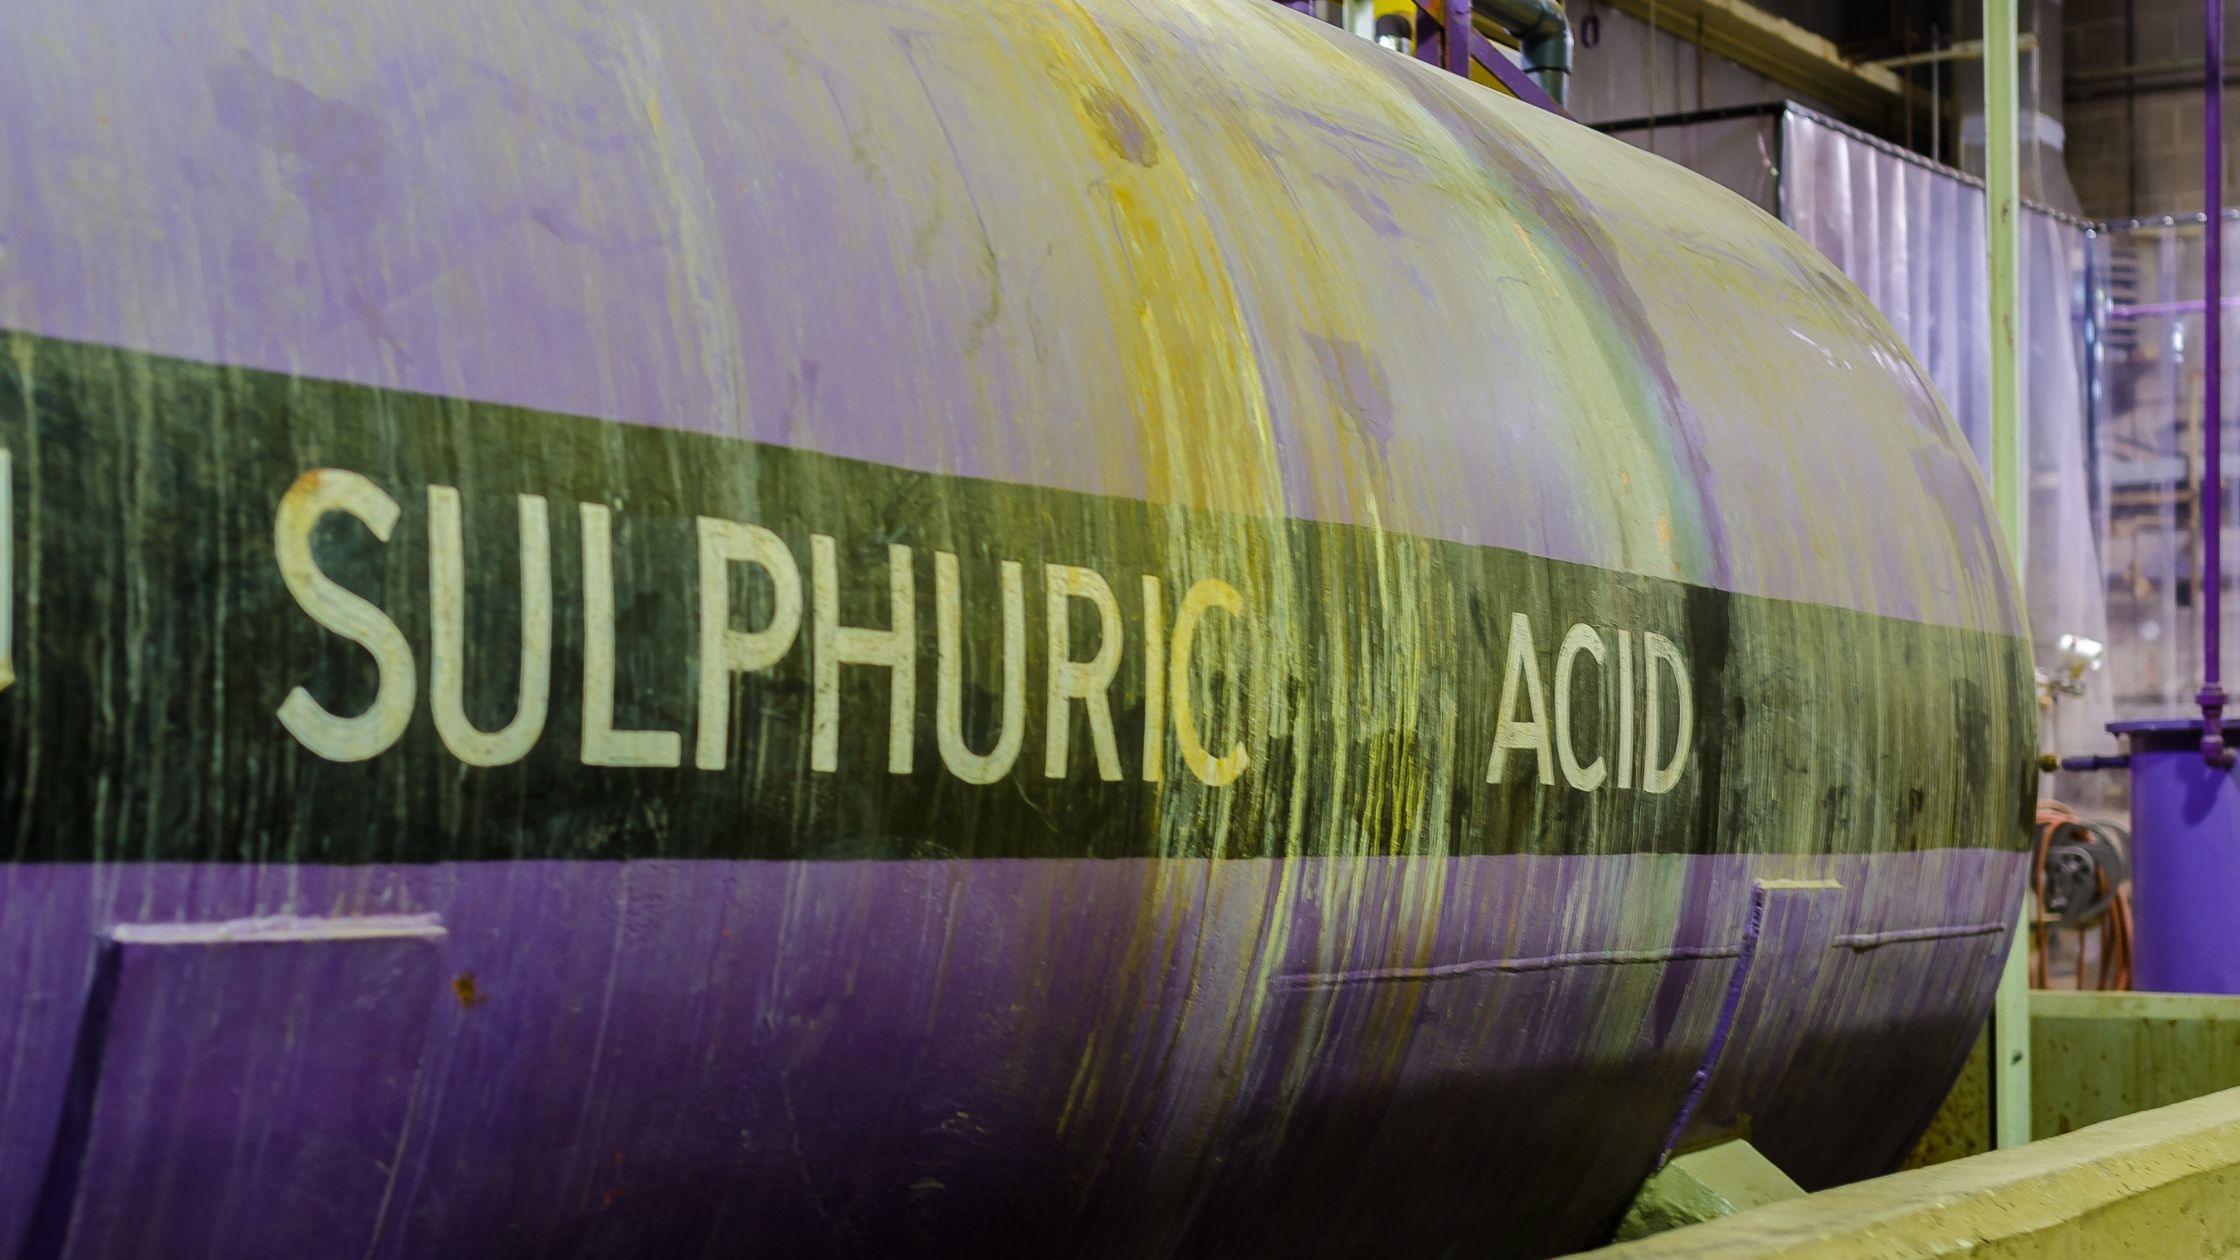 sulphuric acid in a purple tank